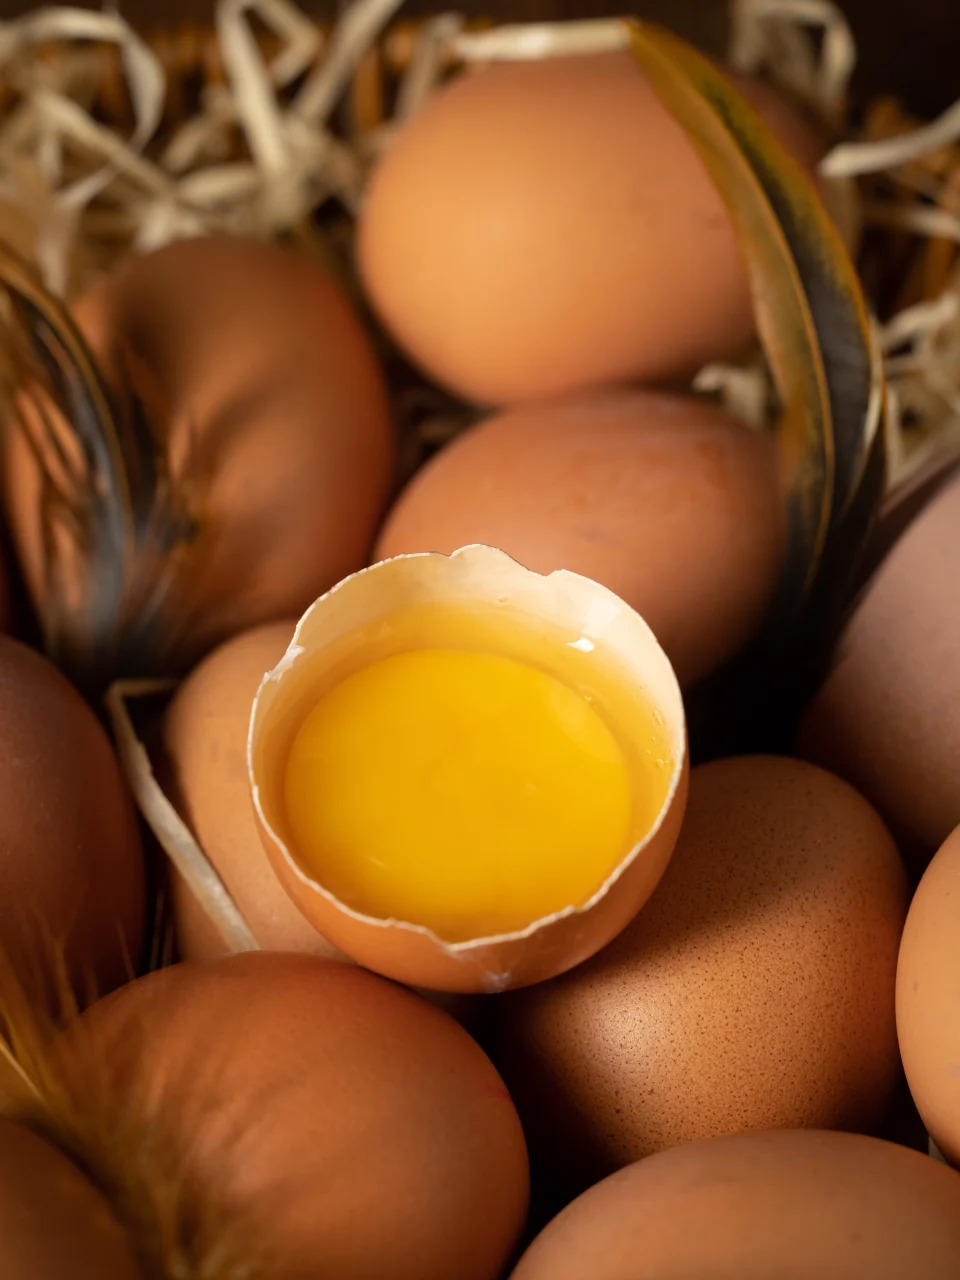 Huevos dentro del gallinero, escena interior de la granja, huevos frescos y tejado de paja.